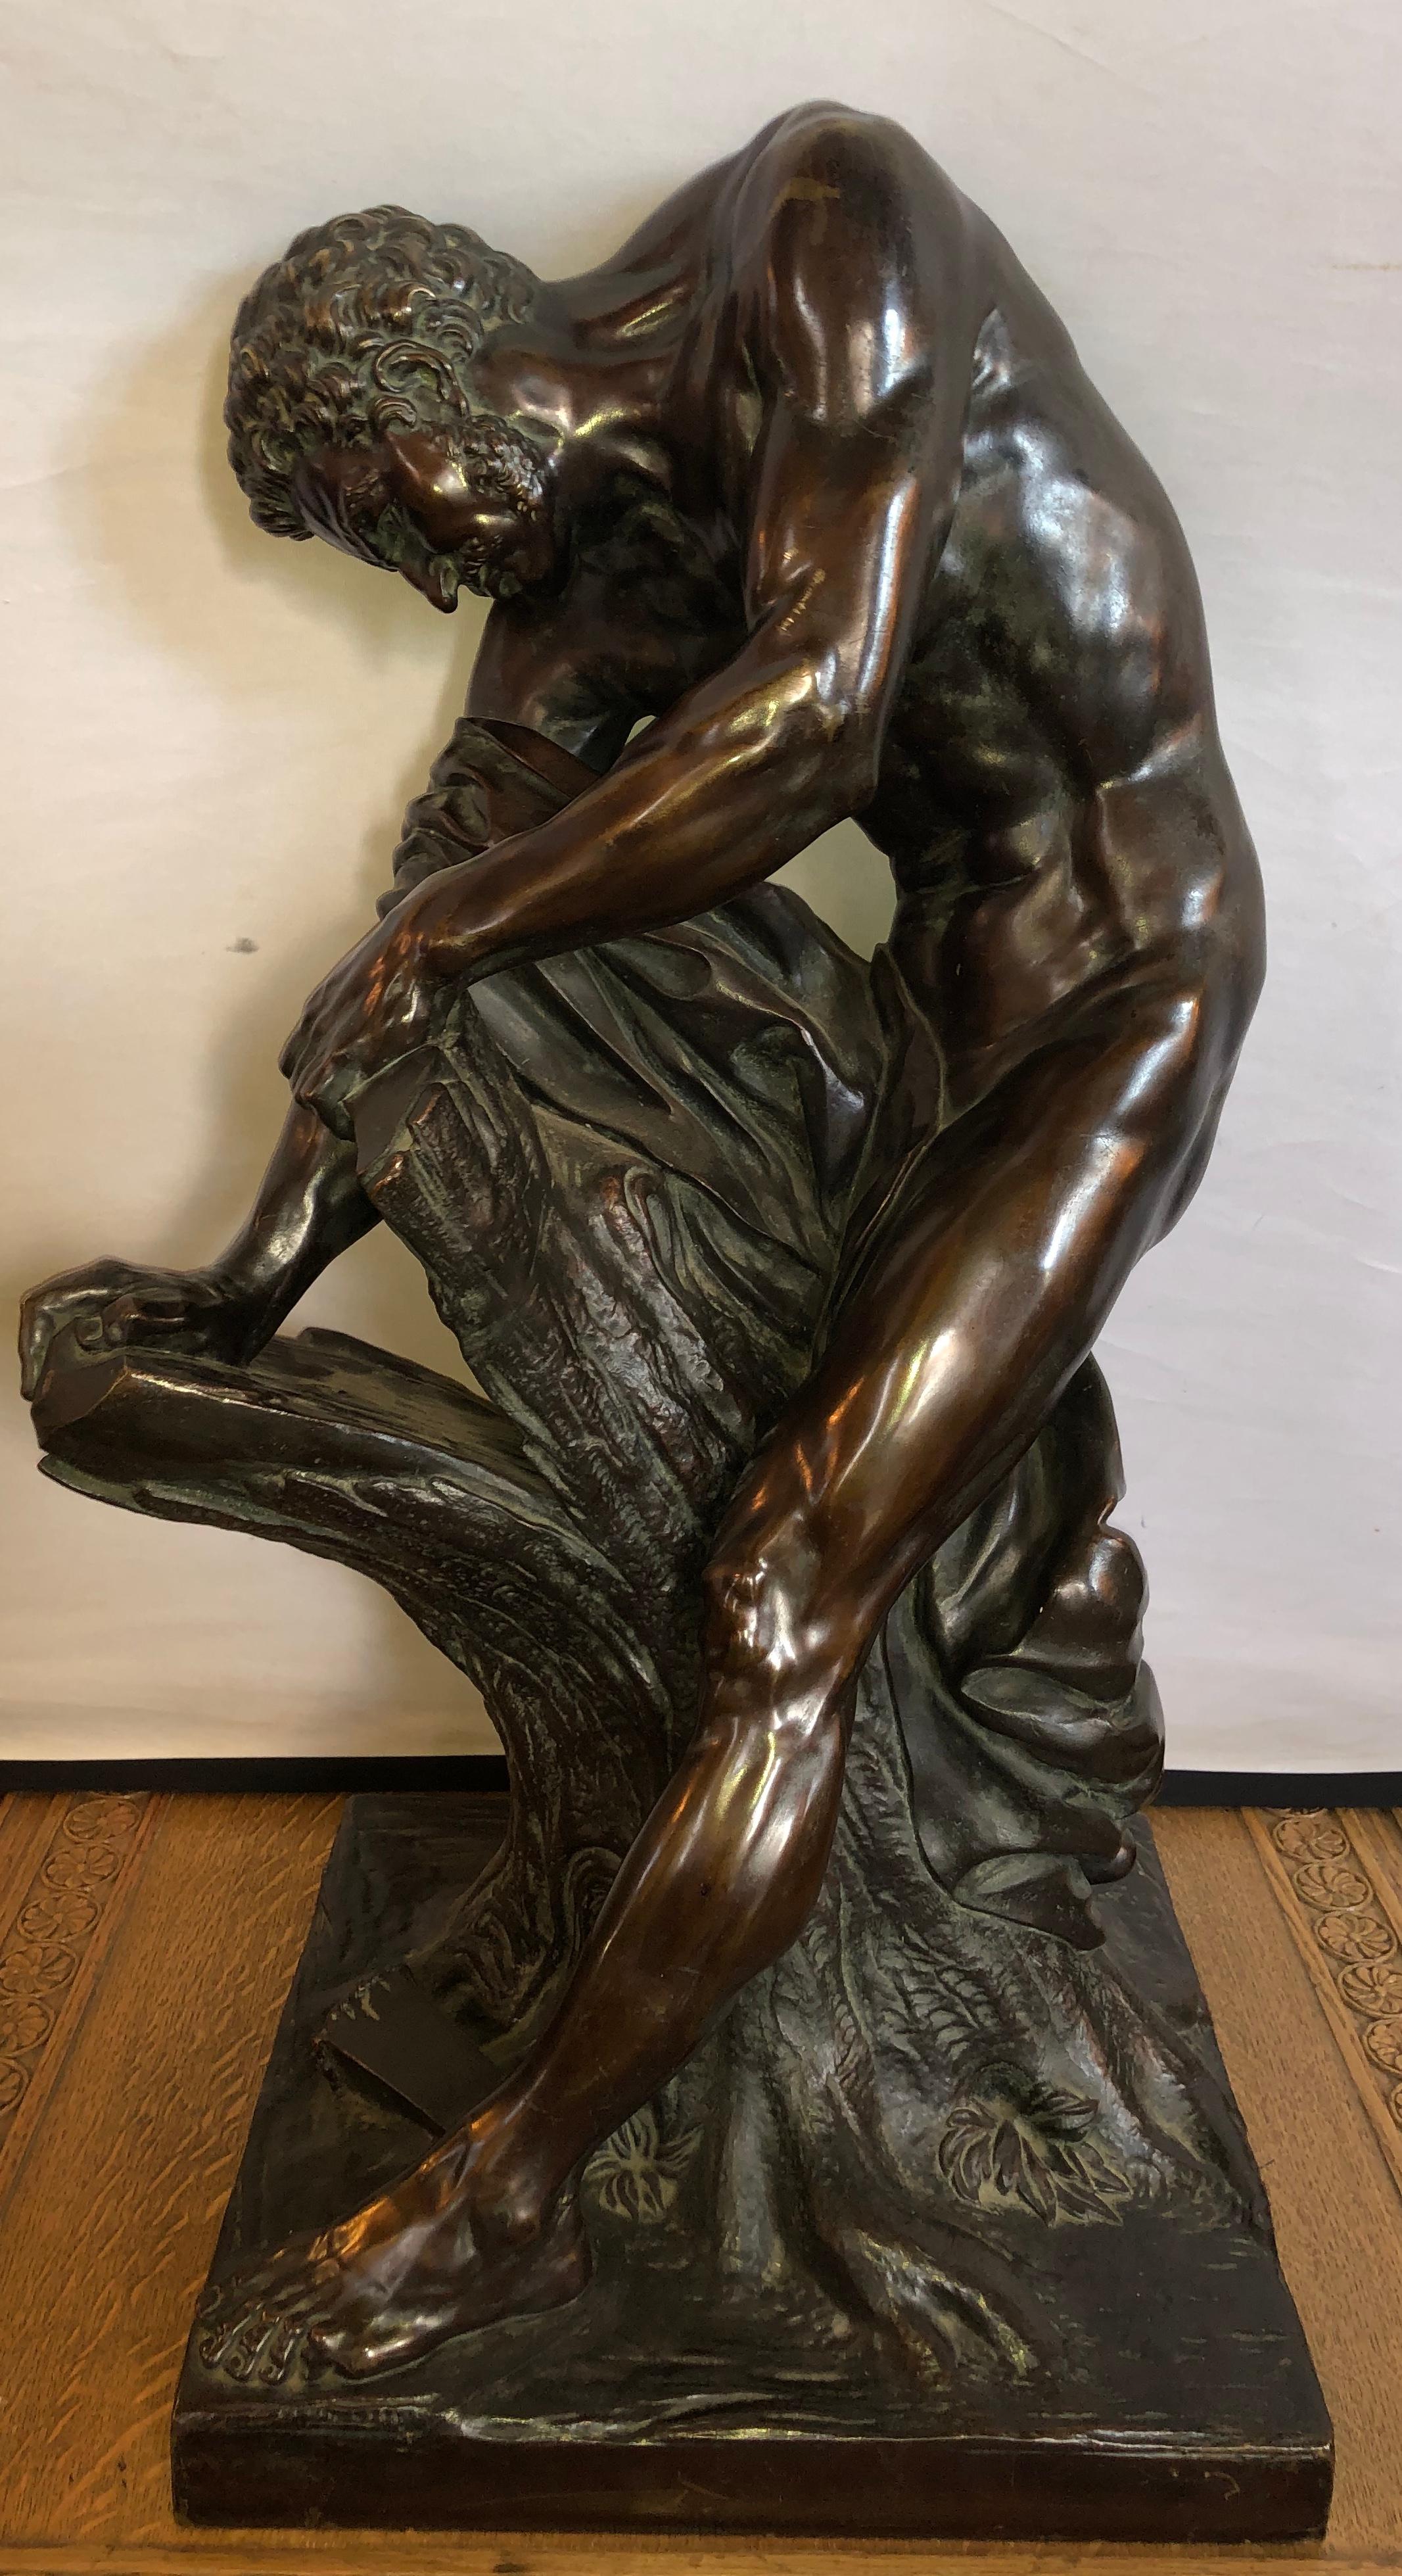 Eine Bronze aus dem späten 19. Jahrhundert nach der Marmorfigur von Milo de Croton von Edme Dumont aus dem Jahr 1768 im Louvre, Paris. Diese palastartige Bronze hat eine prächtige Patina und ist wunderschön gegossen. 

Edme Dumont (französisch,